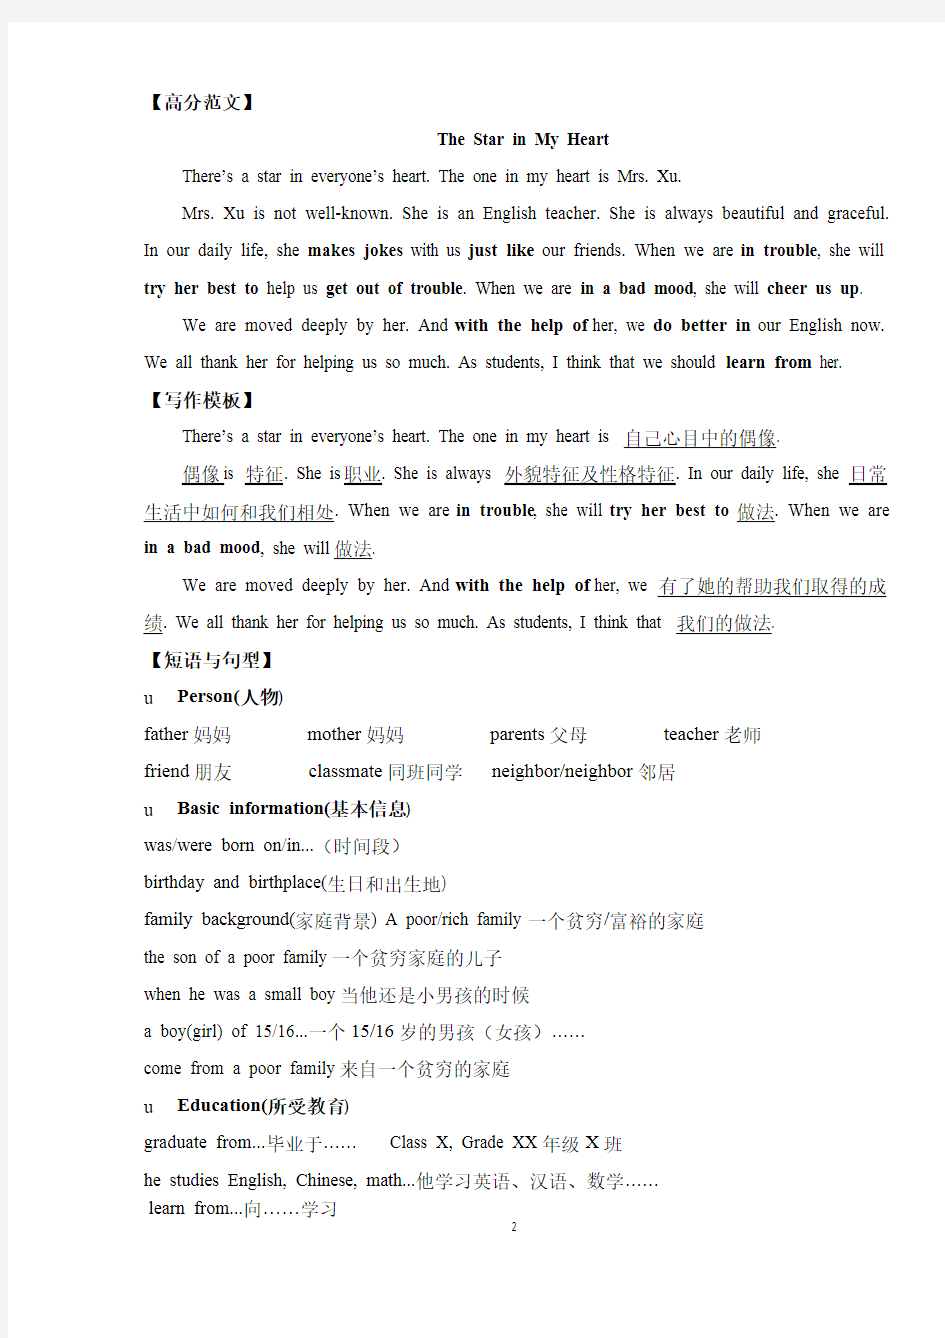 上海中考英语作文指导